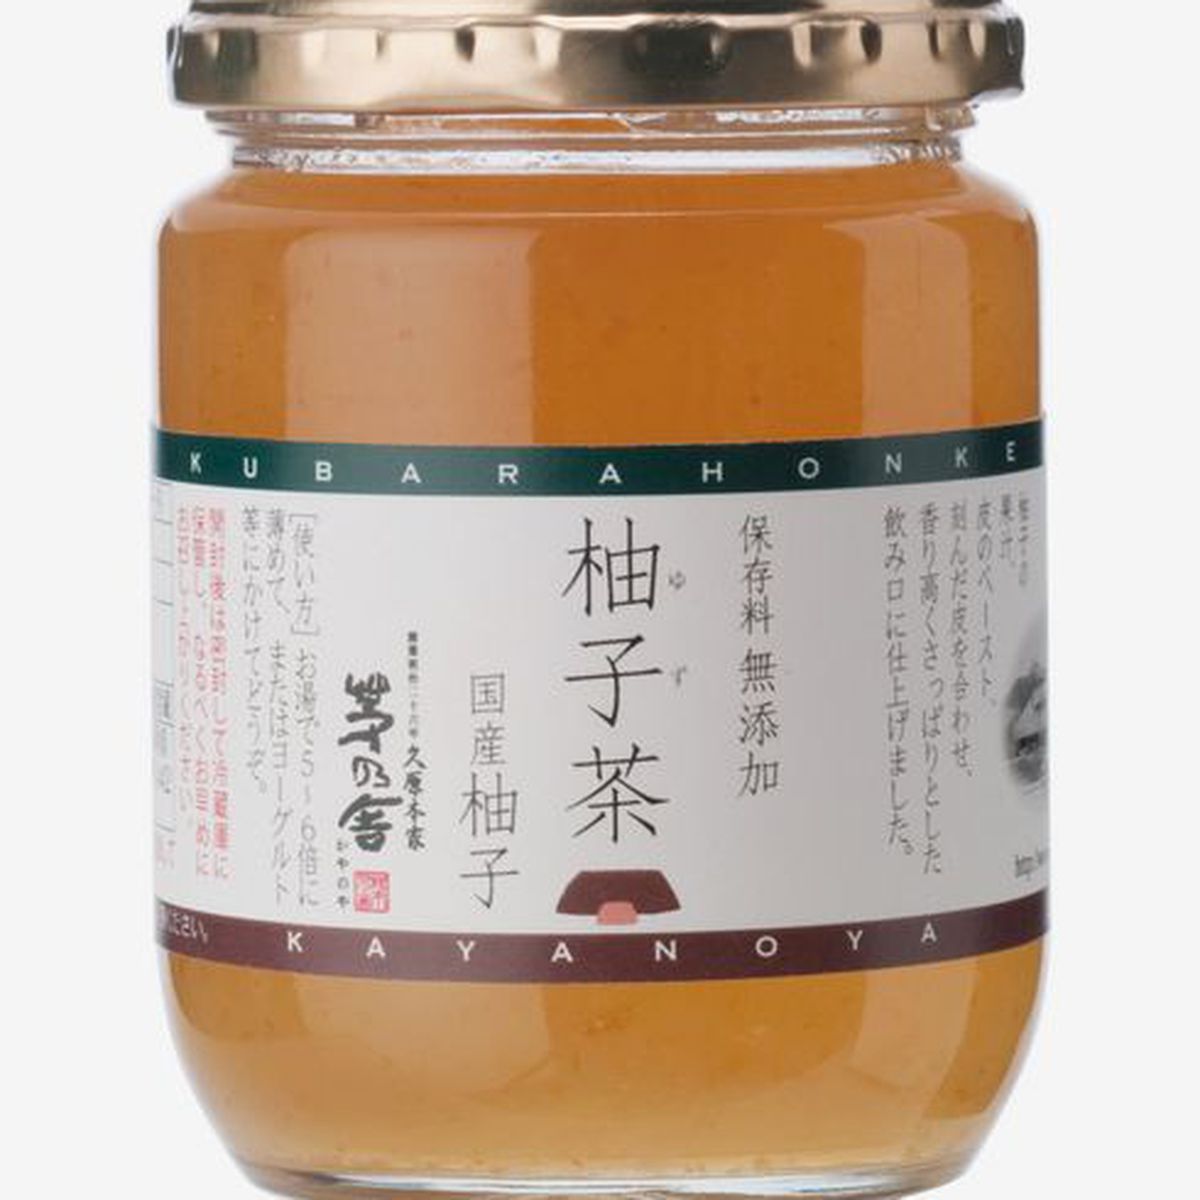 A jar of Kayanoya yuzu fruit preserve